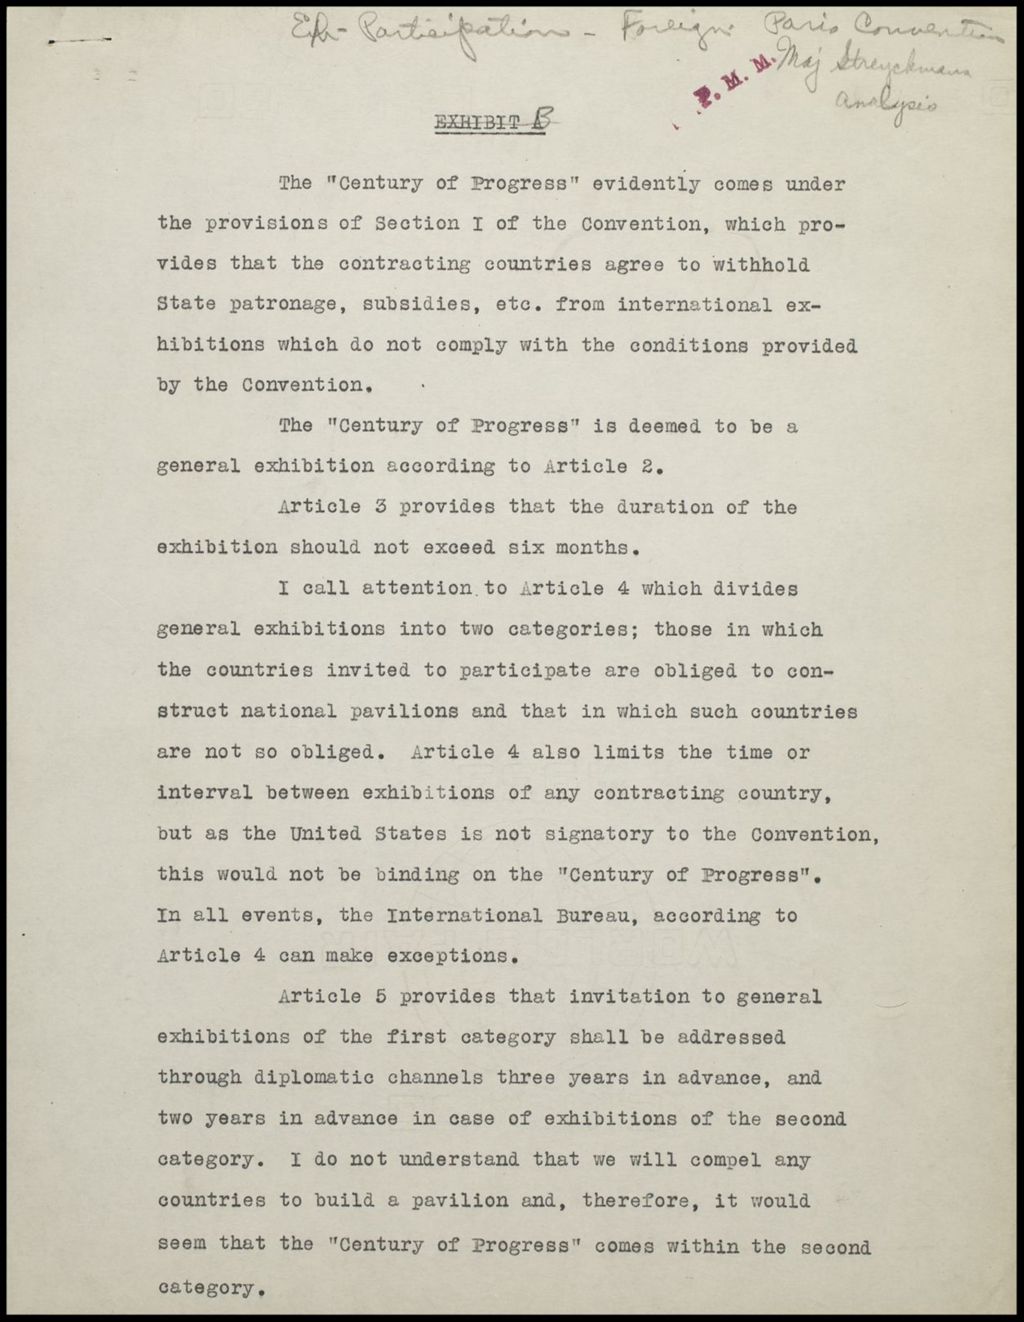 Miniature of Exhibits - Foreign Participation - Paris Convention, 1931 (Folder 11-146)